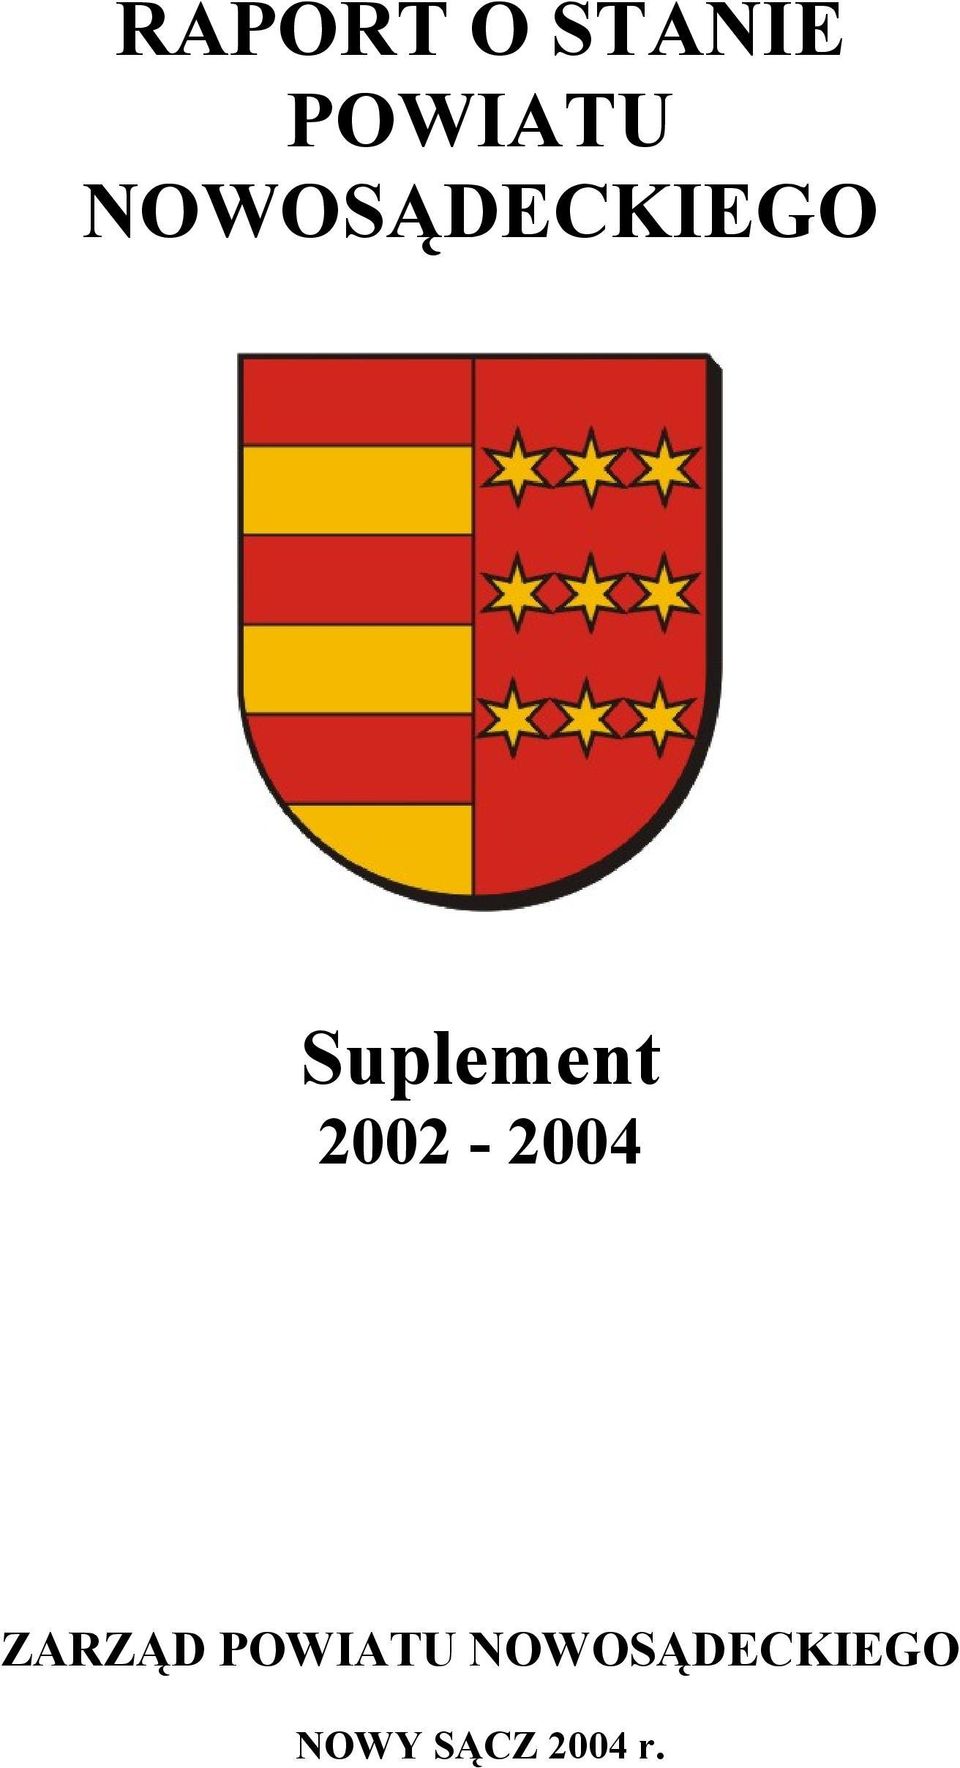 2002-2004 ZARZĄD POWIATU